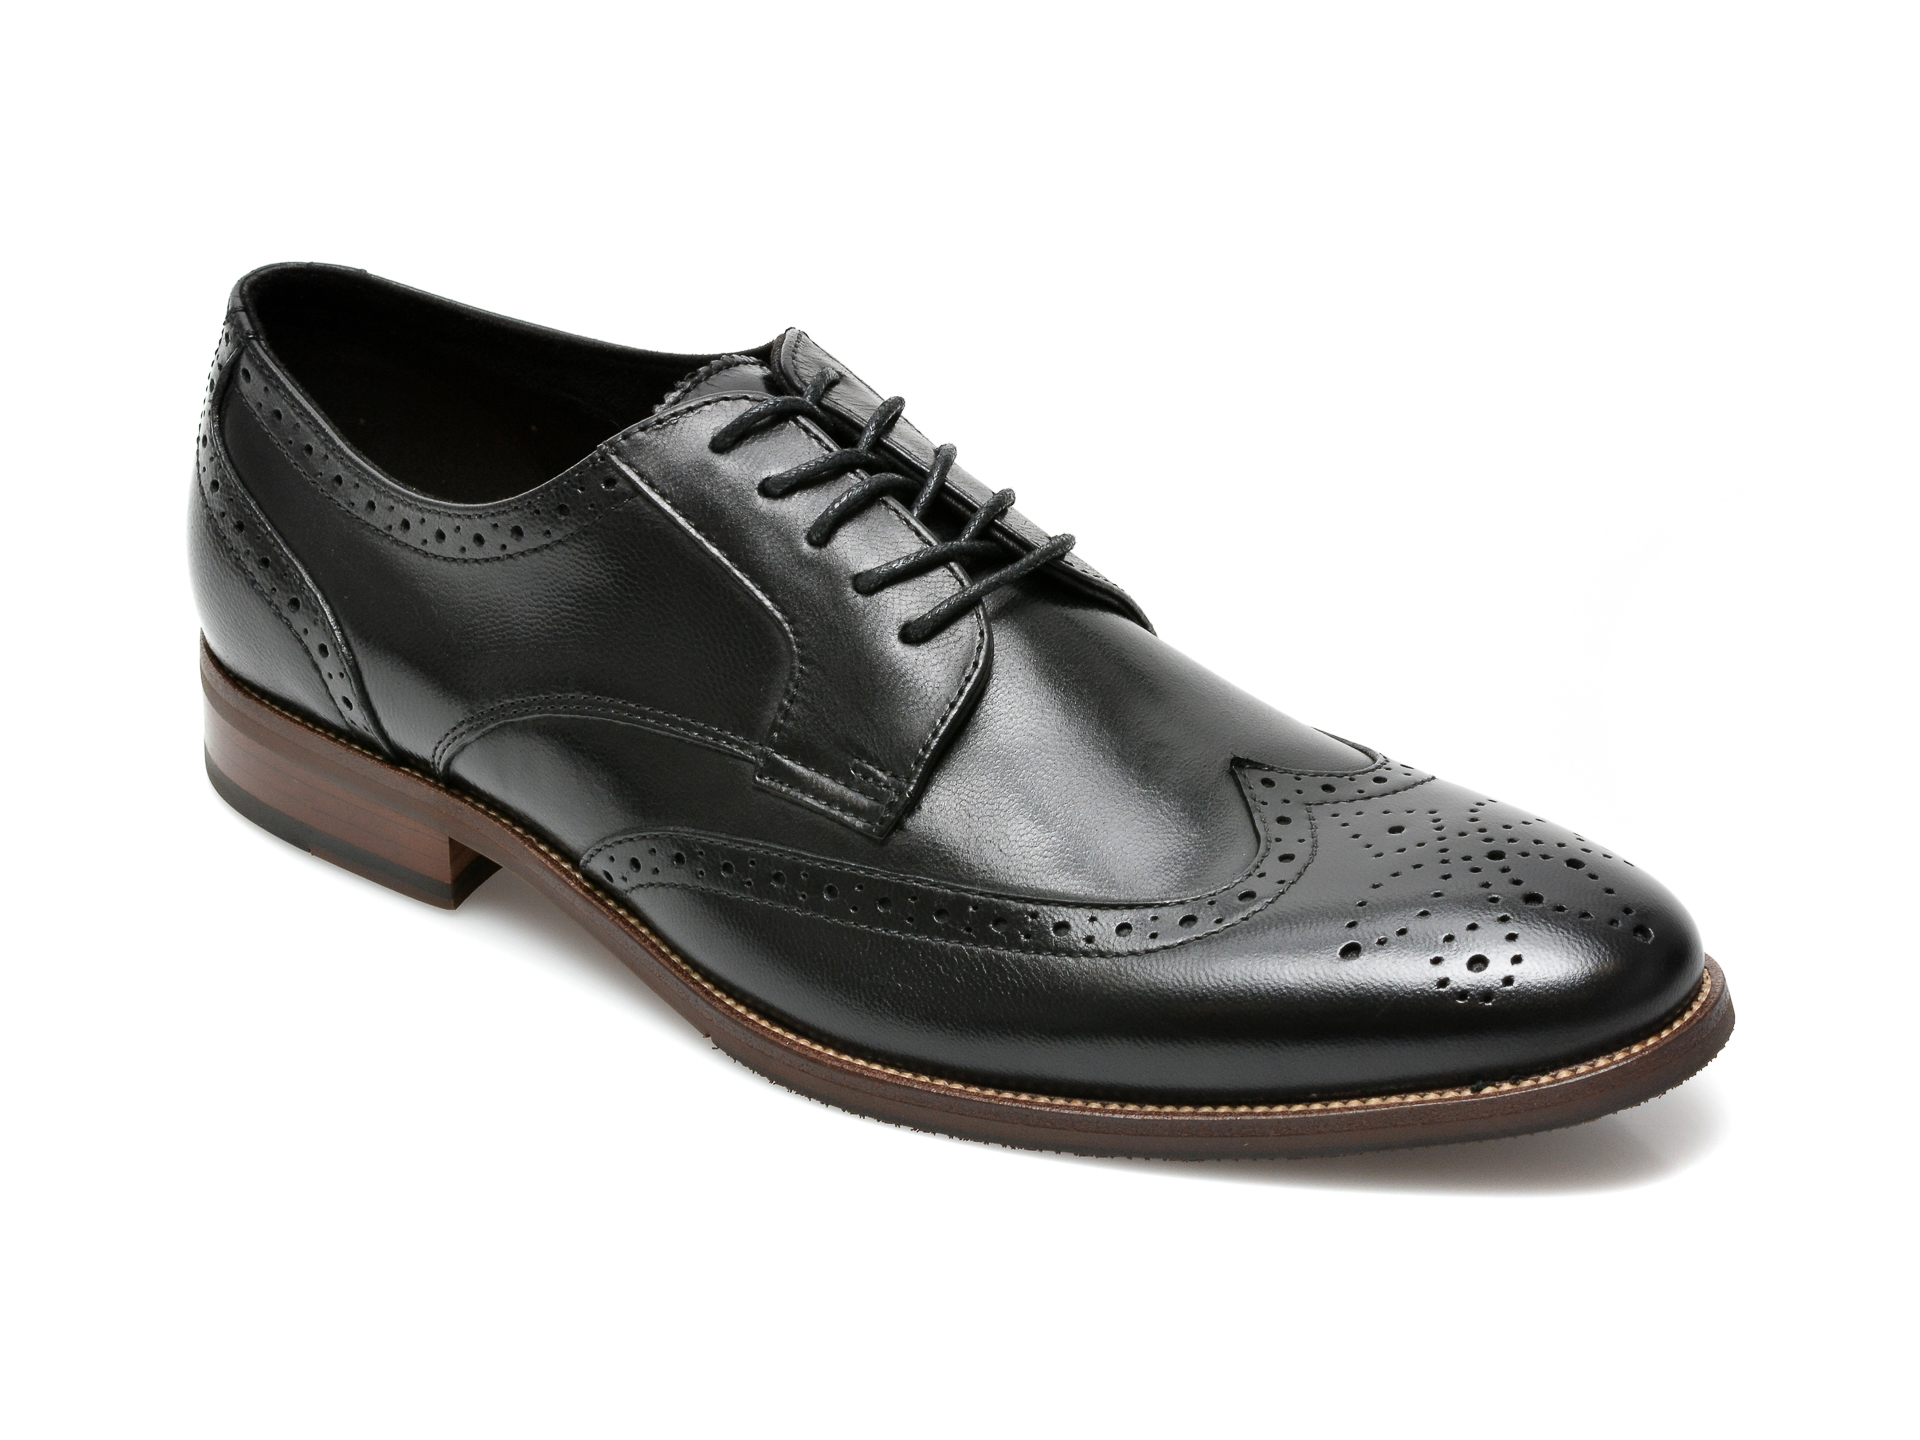 Pantofi ALDO negri, Larethienflex001, din piele naturala Aldo imagine 2022 reducere